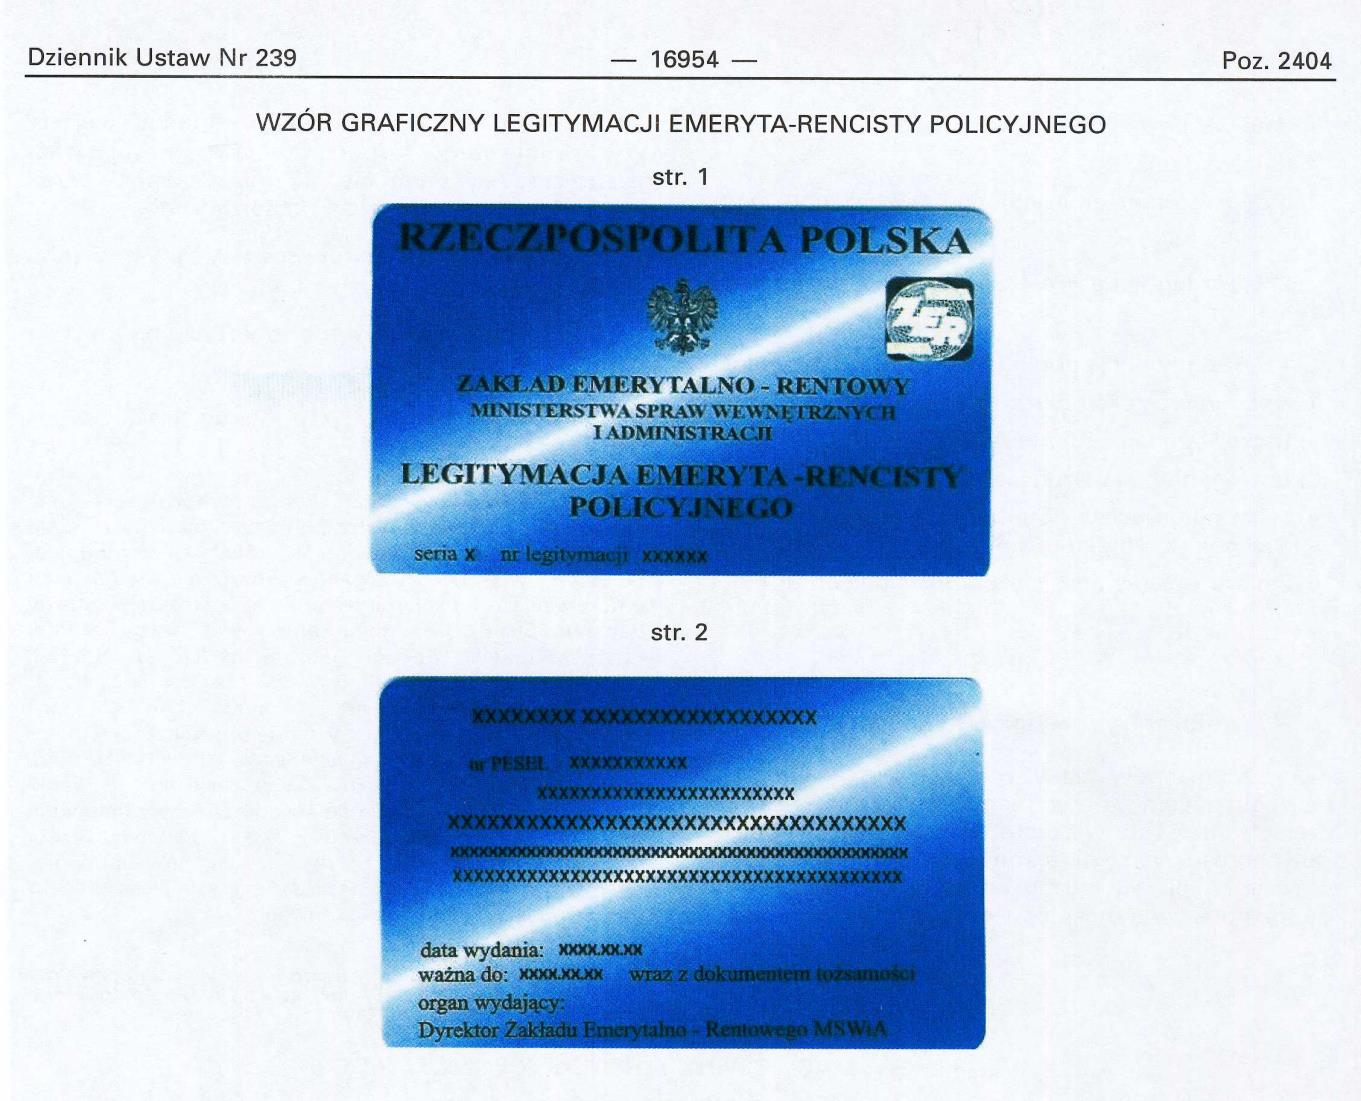 LEGITYMACJA EMERYTA - RENCISTY POLICYJNEGO Wzór nr 39 do nr 20, 23 Legitymacja o wymiarach 55 mm na 85 mm, o krawędziach zaokrąglonych, koloru niebieskiego cieniowanego, dwustronnie foliowana